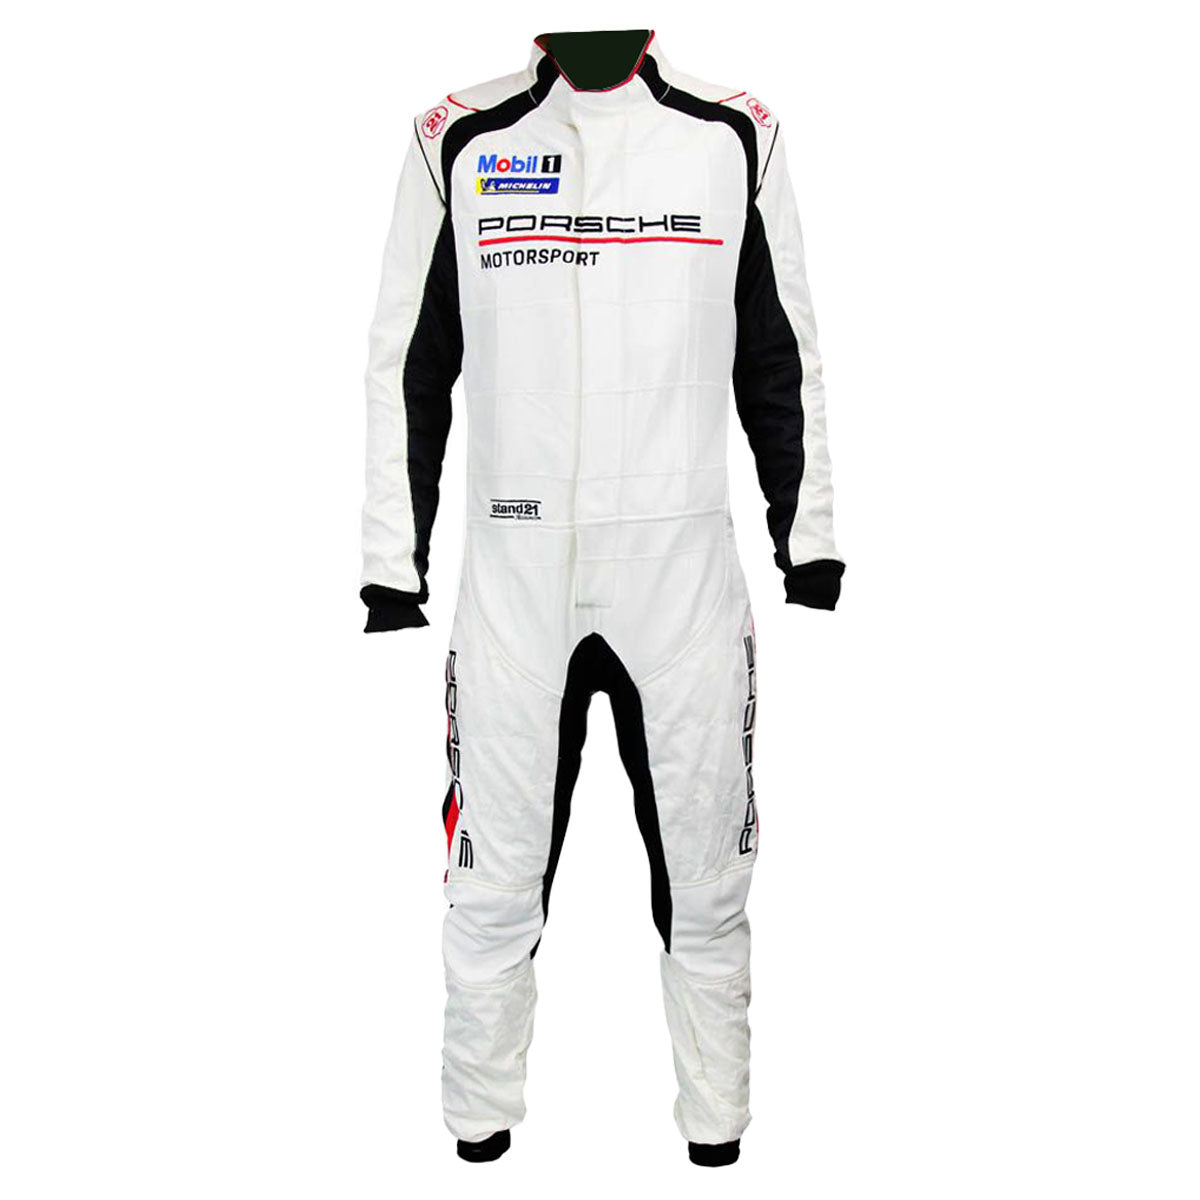 Stand21 Porsche Motorsport La Couture Hybrid Race Suit White Image